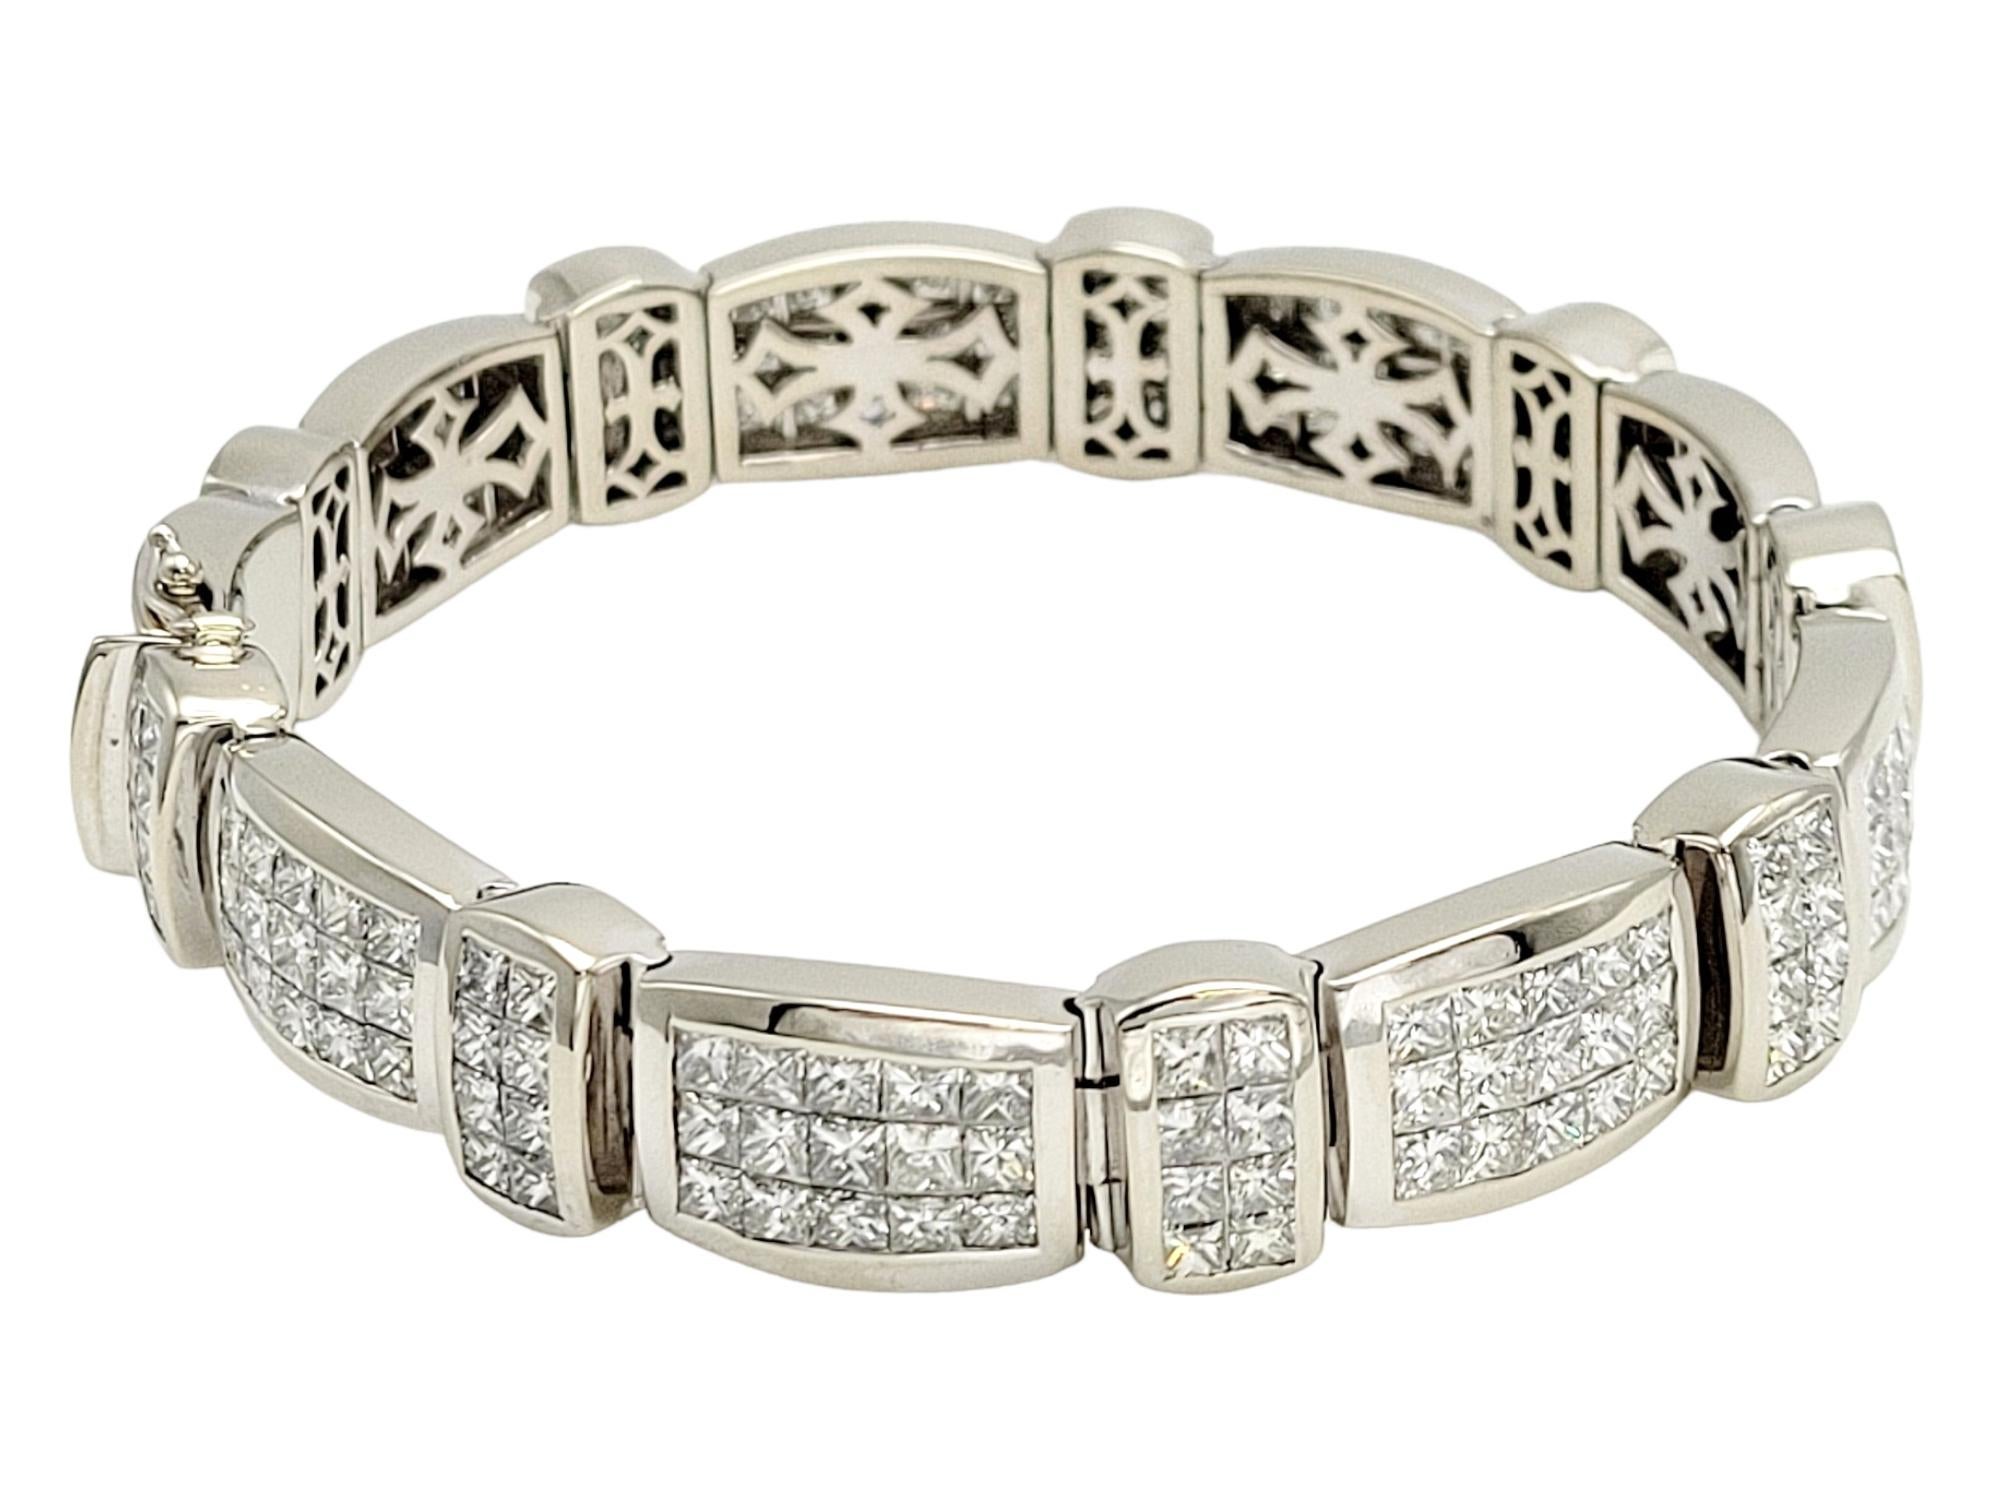 Ce bracelet exquis de 30,93 carats, serti invisible de diamants de taille princesse, est une merveille de l'artisanat de la haute joaillerie. Cette magnifique pièce est ornée de 207 éblouissants diamants de taille princesse, sertis de manière